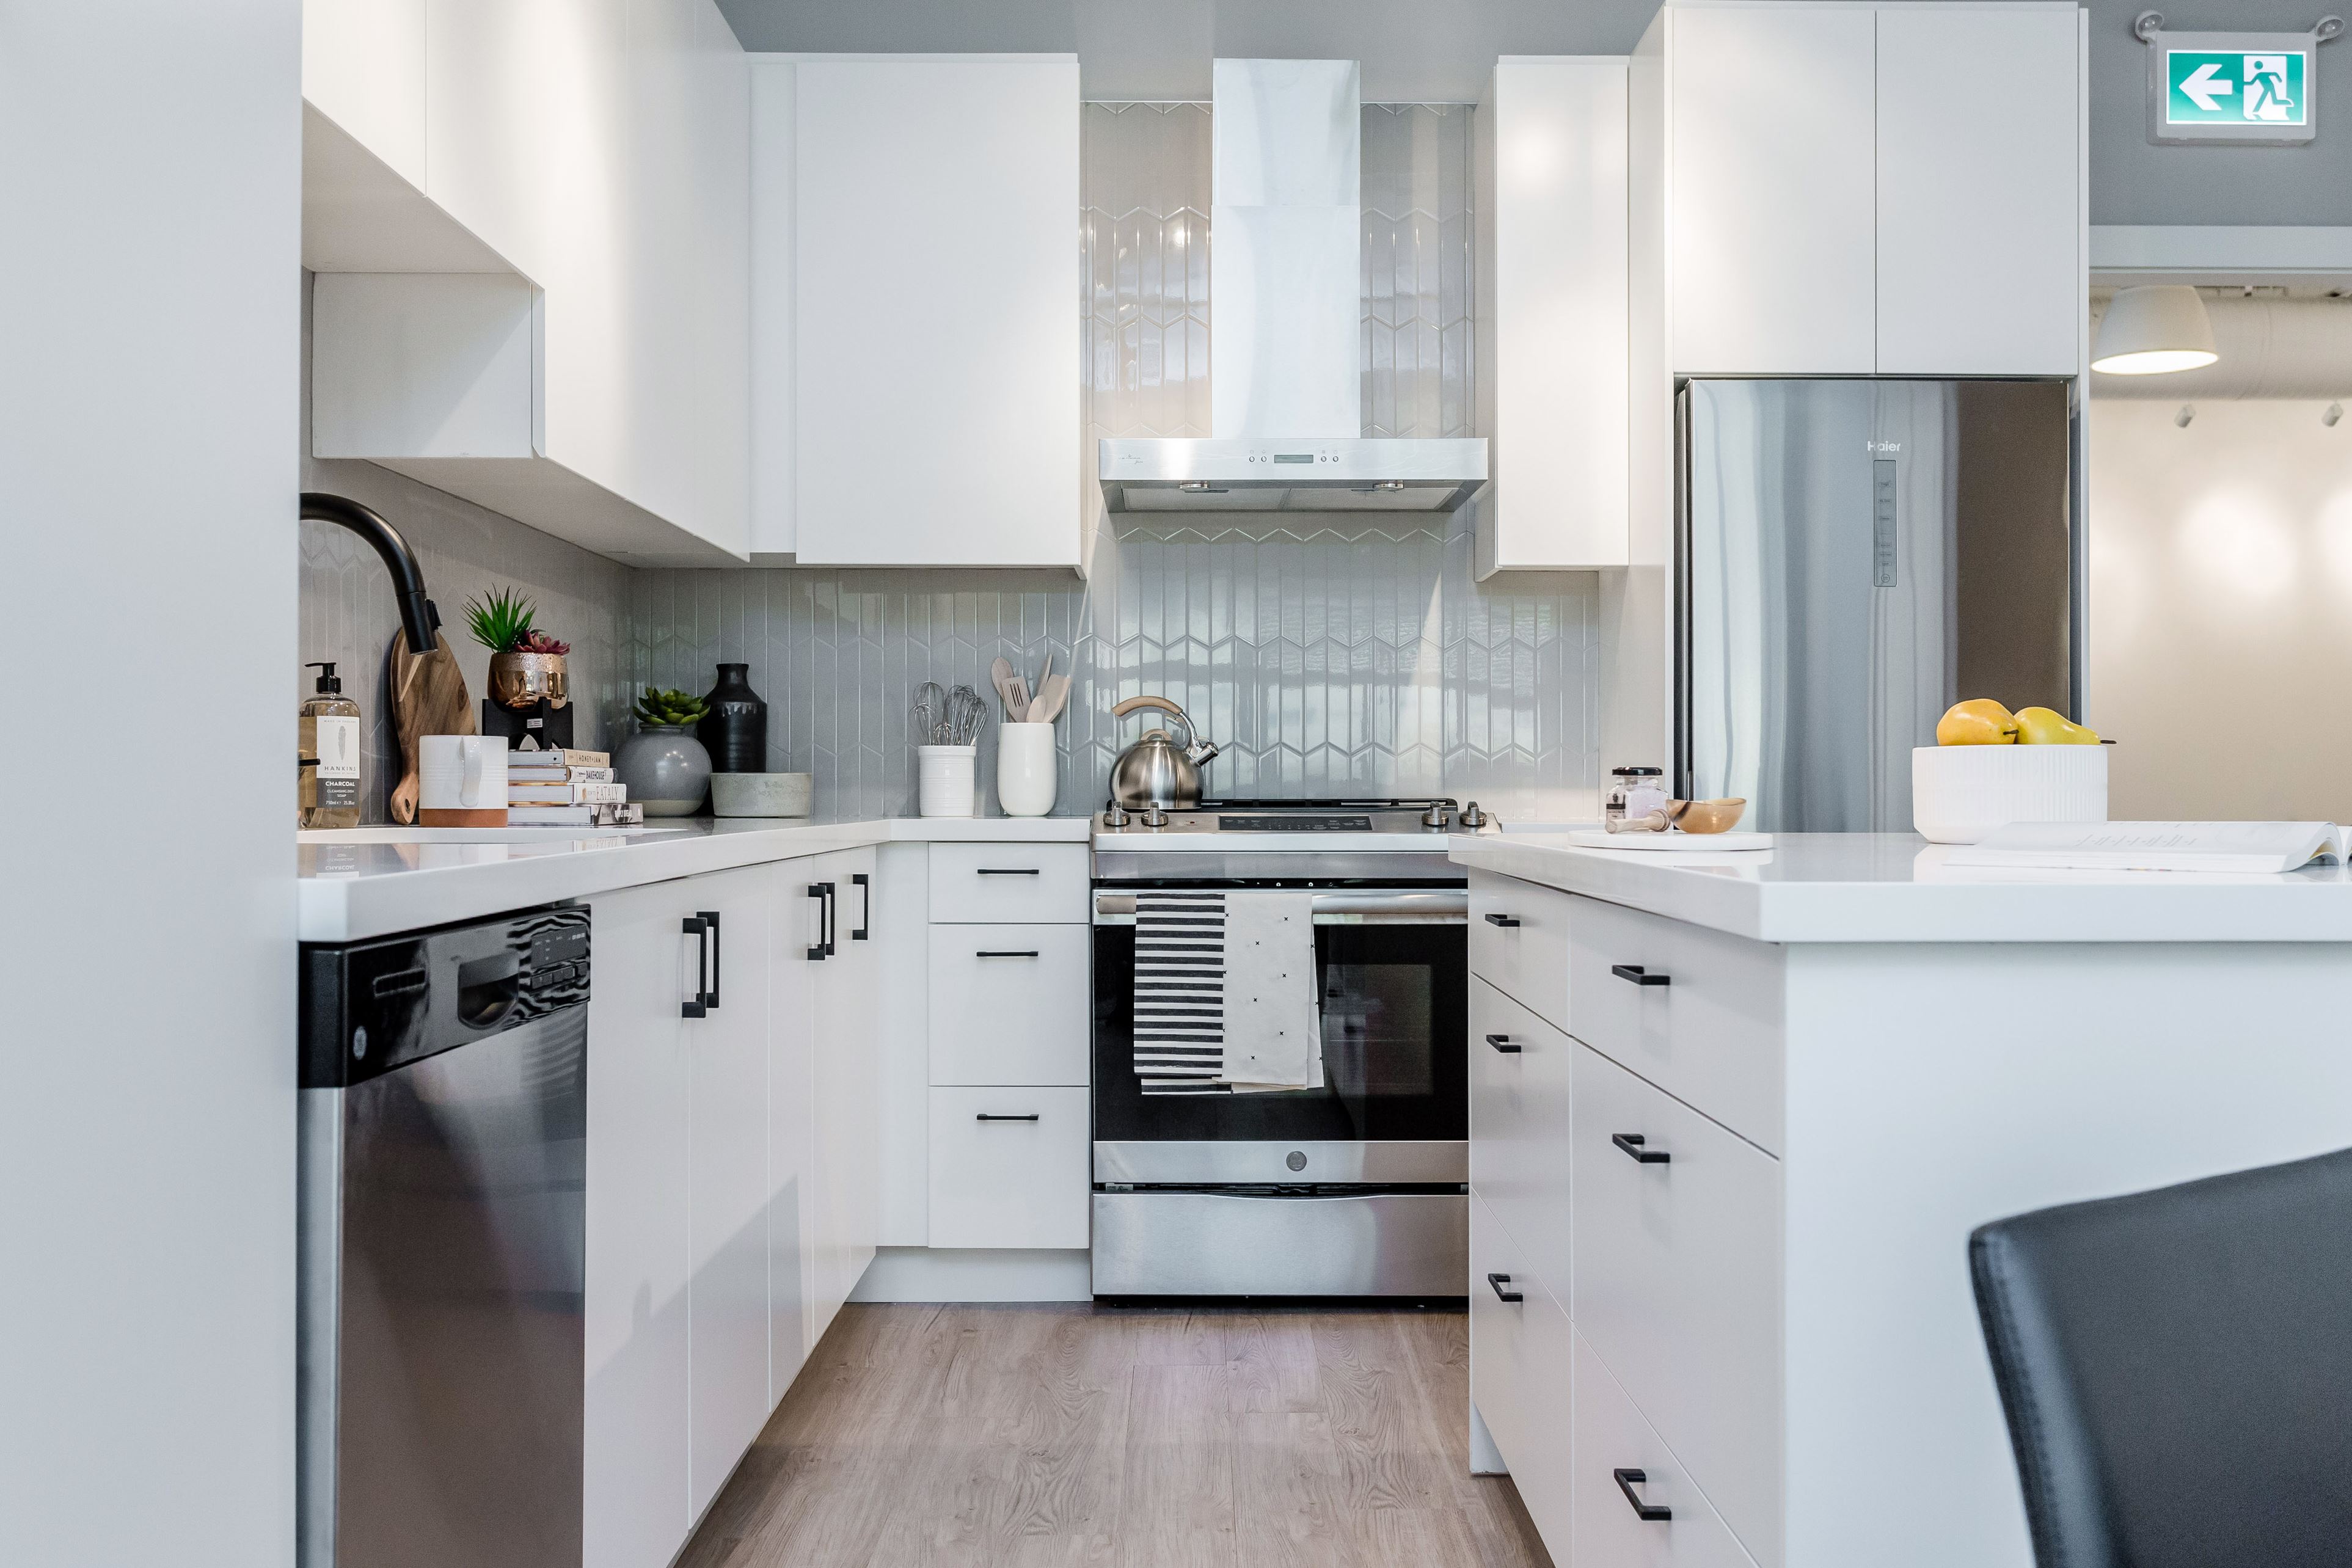 Interior design concept for Hudson & Singer condominium kitchens.